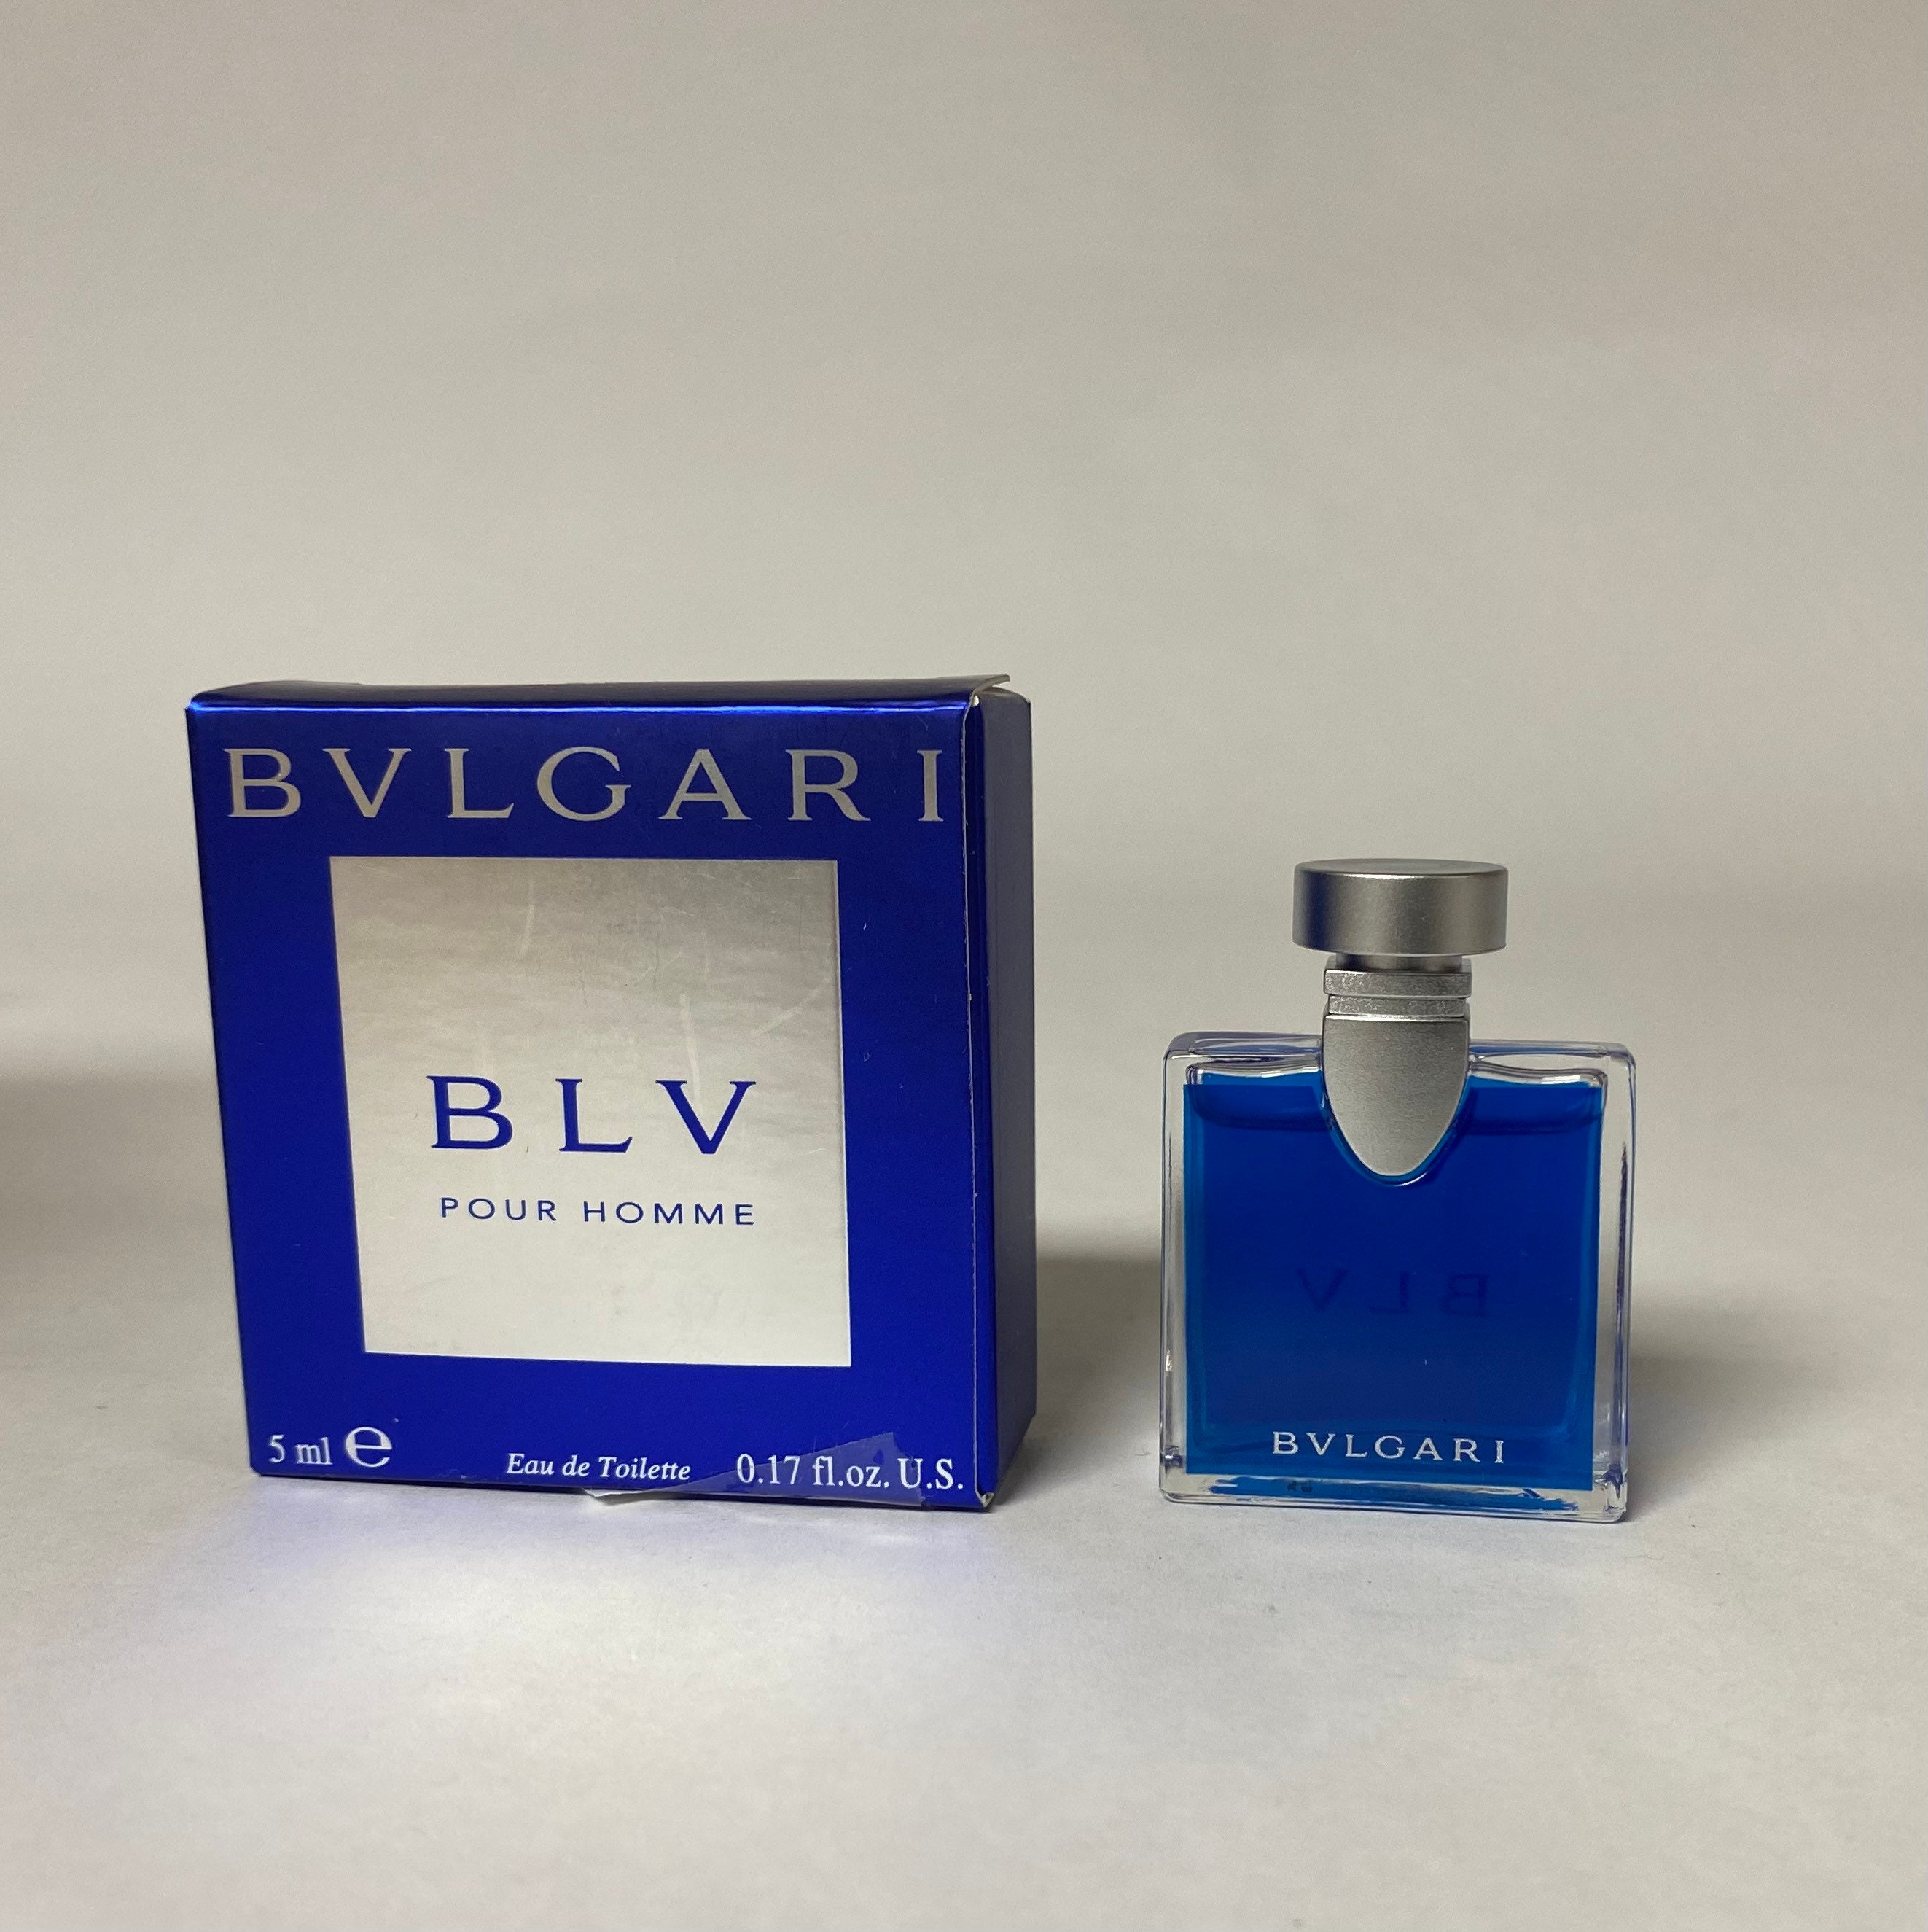 Bvlgari BLV Man - Eau de Toilette (tester without cap)